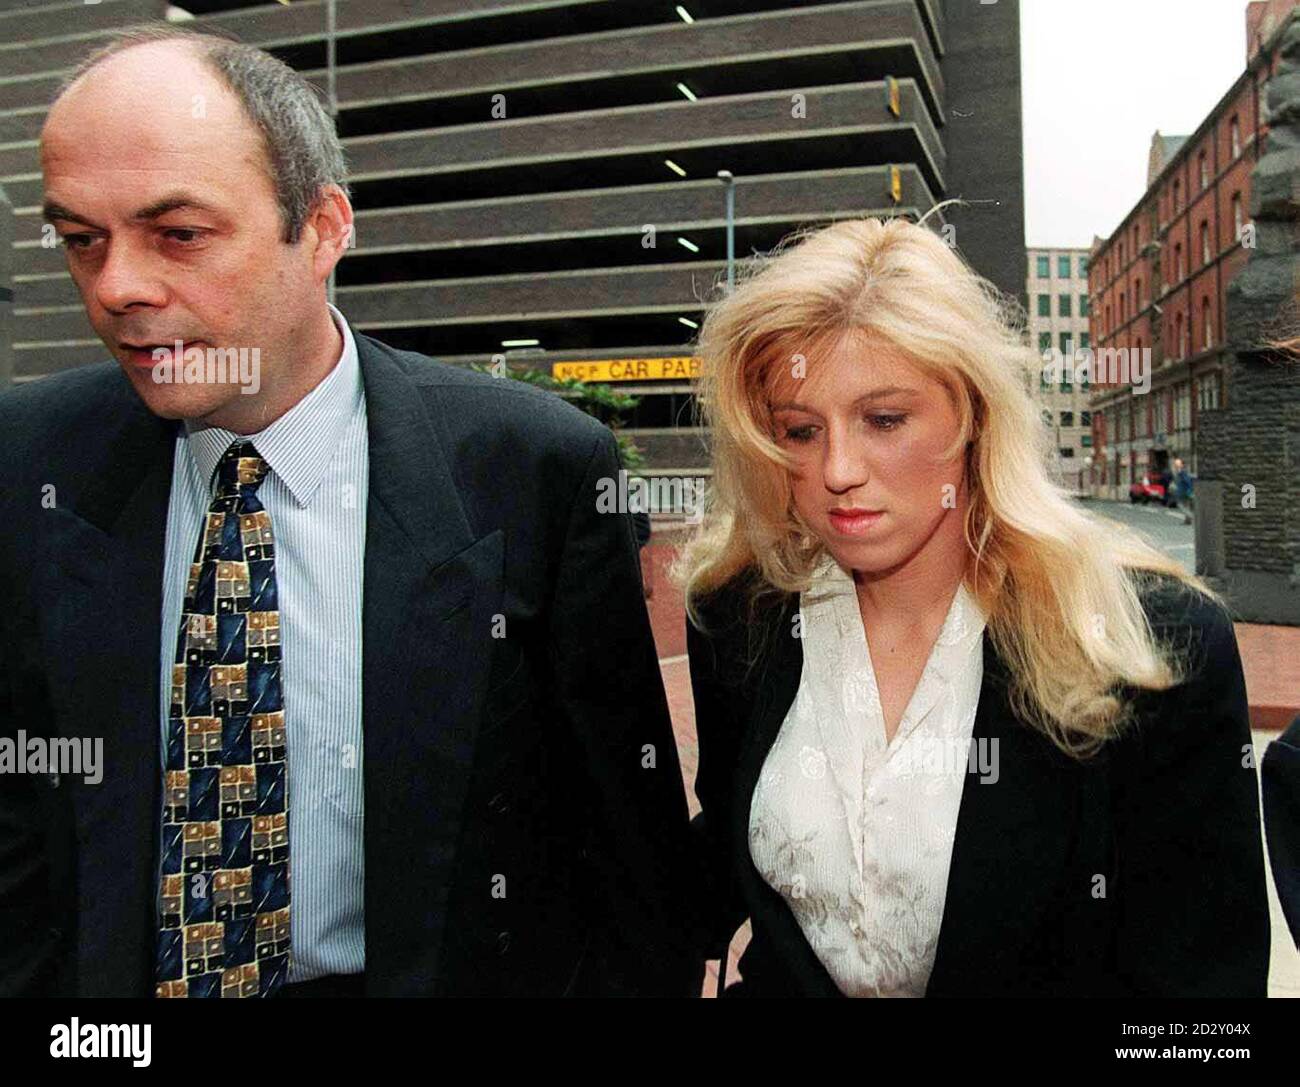 Tracie Andrews, accompagnée du beau-père Alan carter, arrive ce matin au tribunal de la Couronne de Birmingham (jeudi) où elle est en procès pour le meurtre de son ami Lee Harvey. PHOTO DAVID JONES/PA Banque D'Images